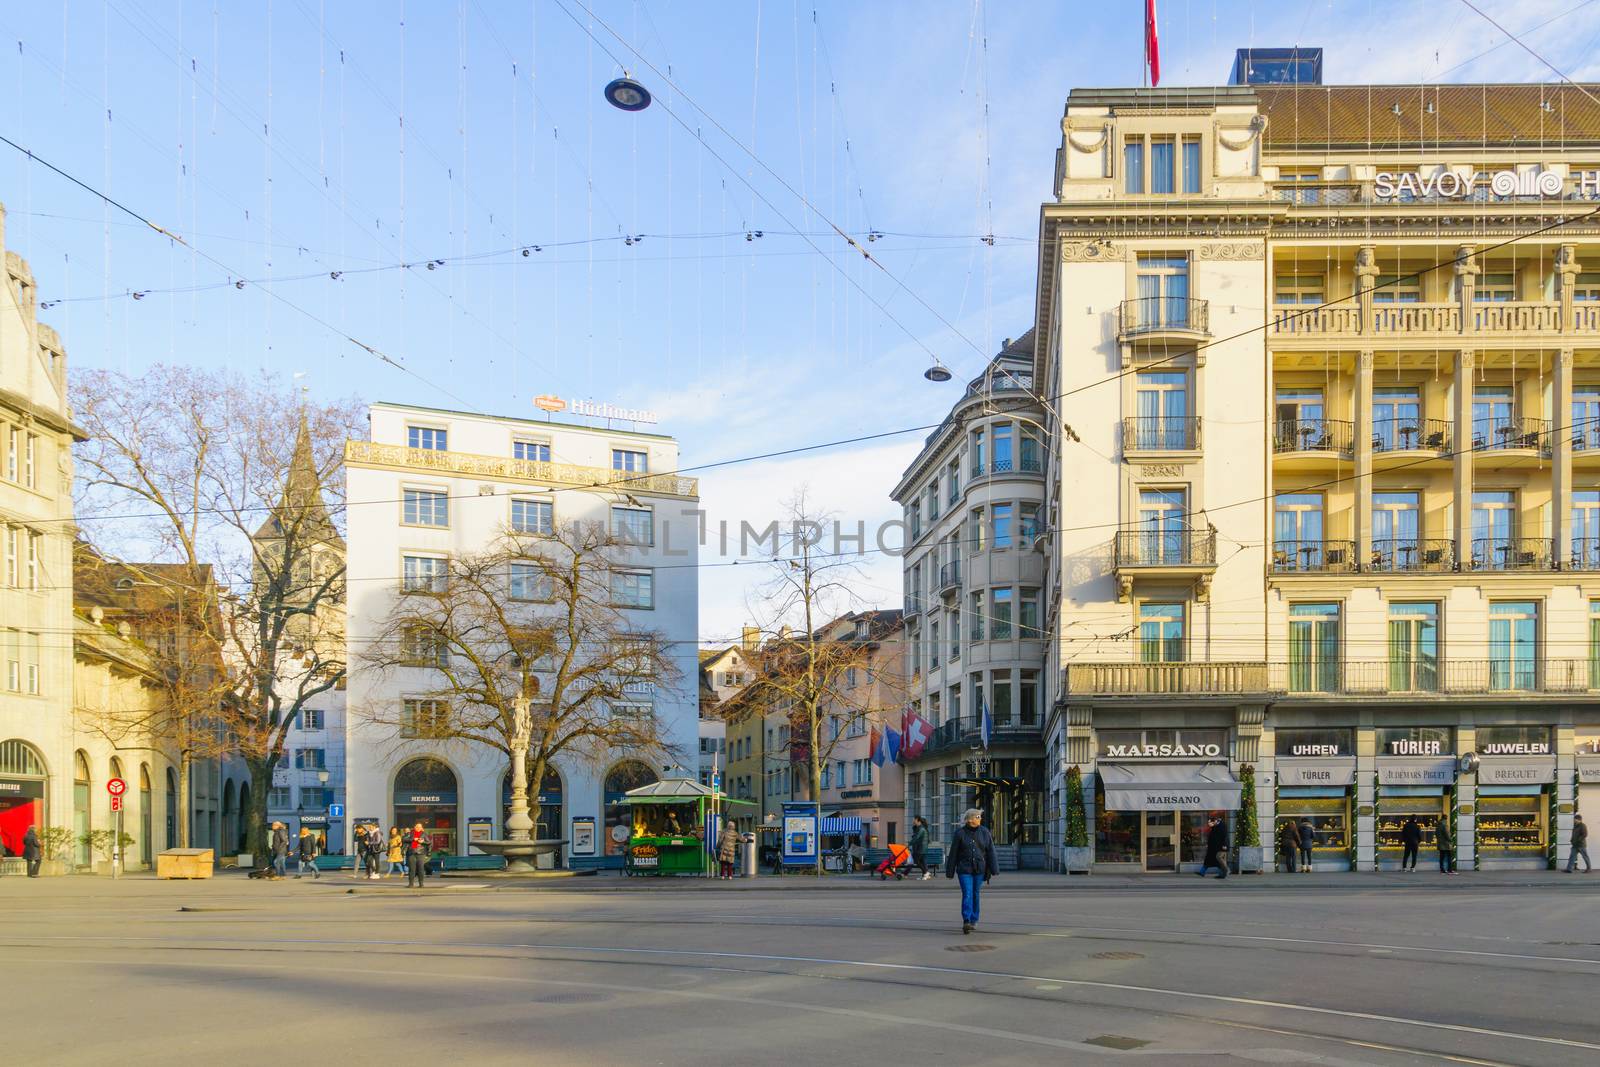 ZURICH, SWITZERLAND - DECEMBER 27, 2015: Scene of the Paradeplatz (Parade) square, with locals and visitors, in Zurich, Switzerland